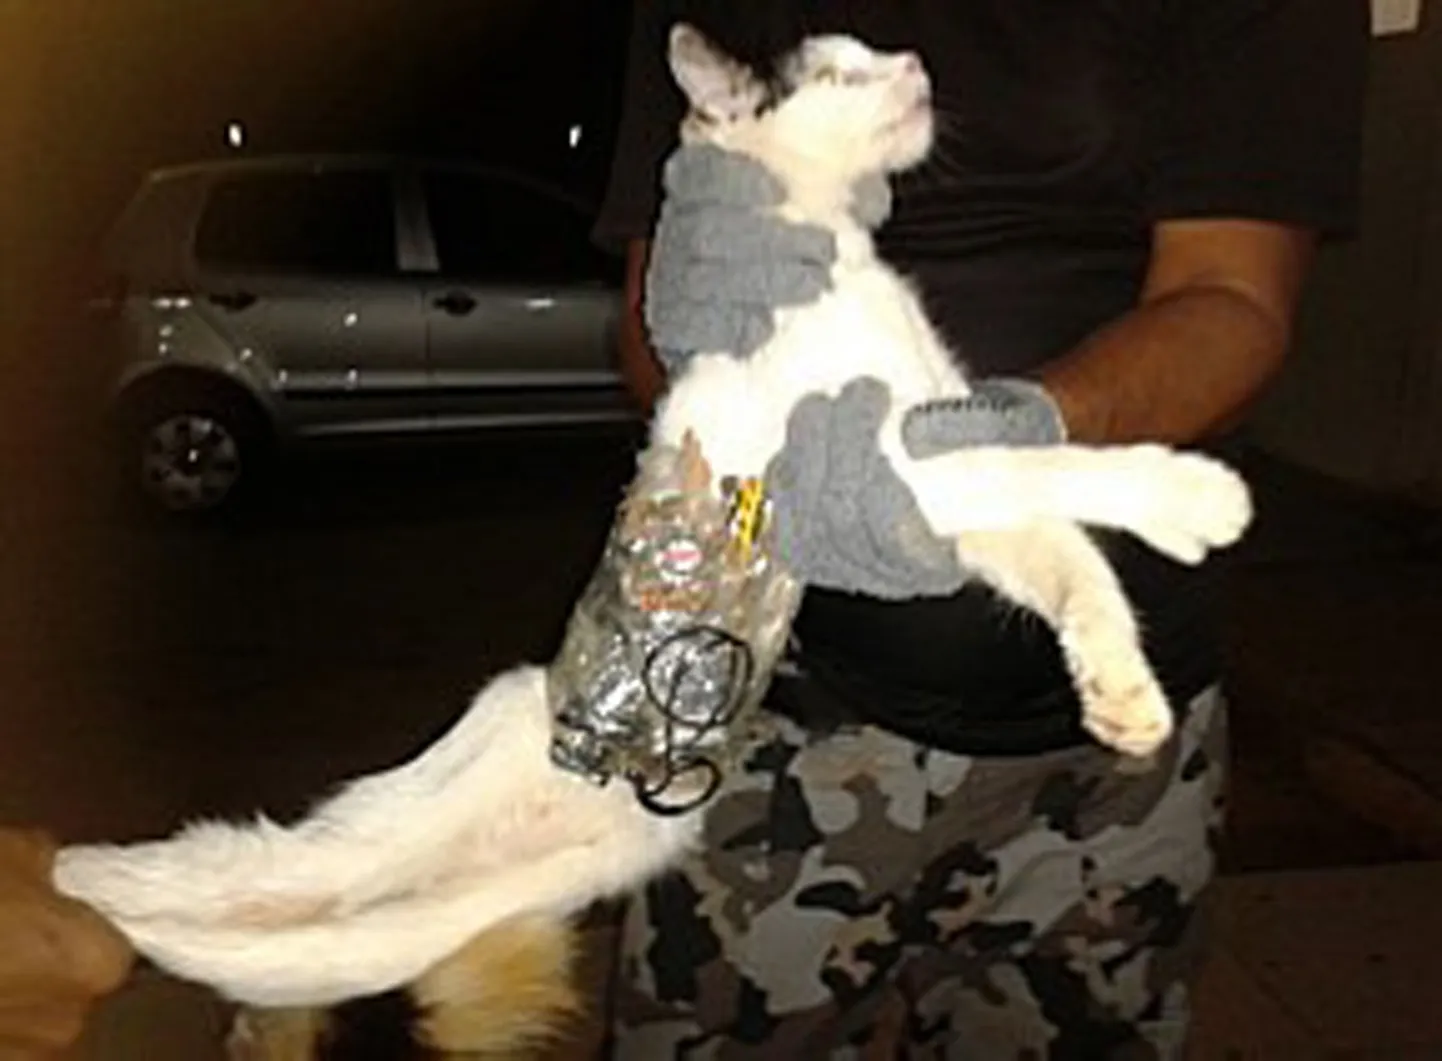 Vangivalvur hoidmas kassi, mis Brasiilia kinnipeetavatele keelatud esemeid viia üritas.